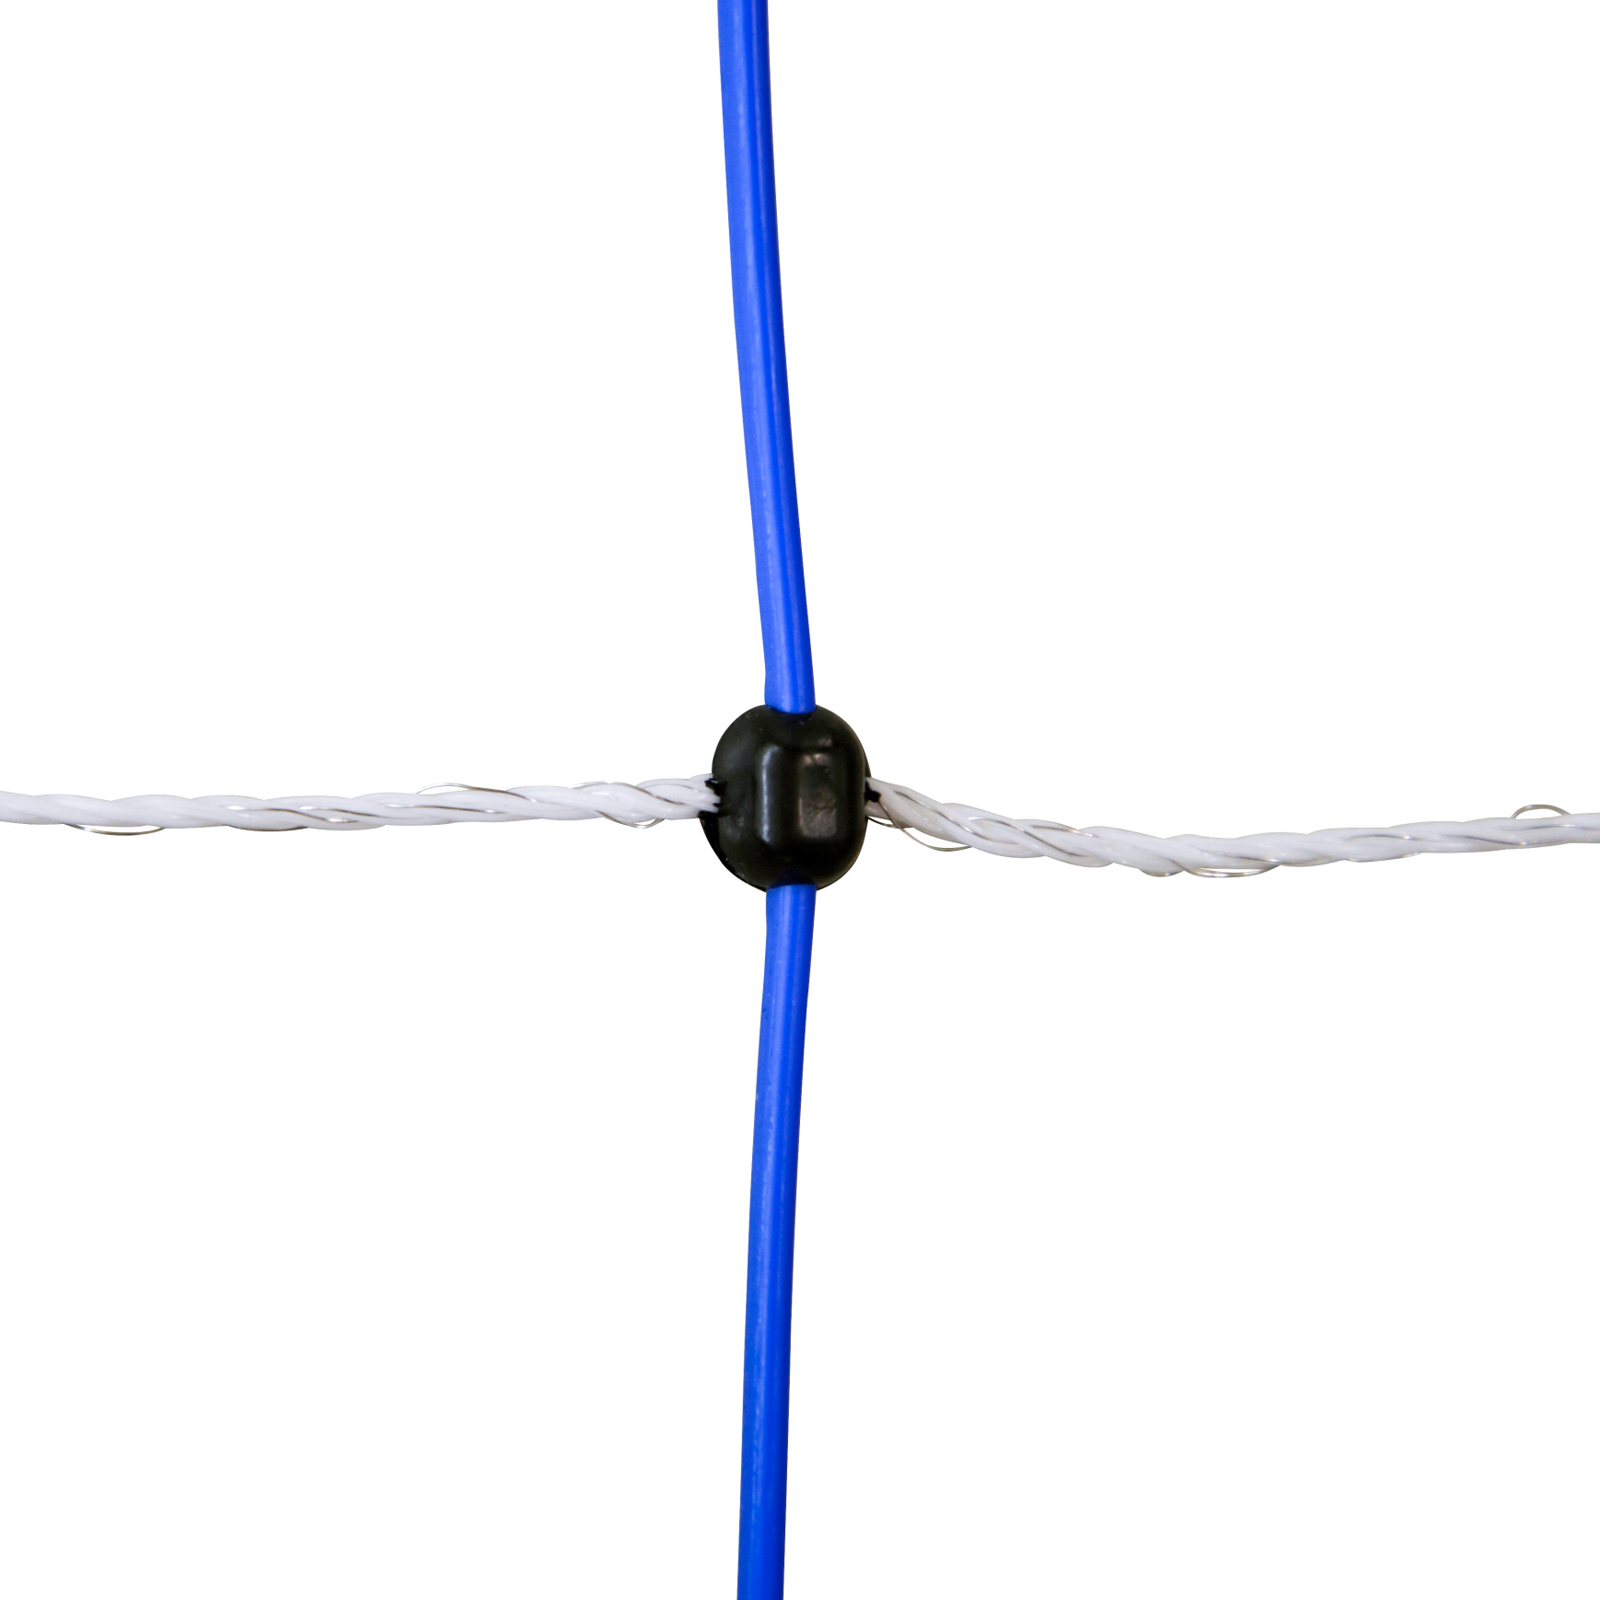 Ako Wildzaun TitanNet 145 mit Strom, Doppelspitze, weiß-blau 25 m x 145 cm